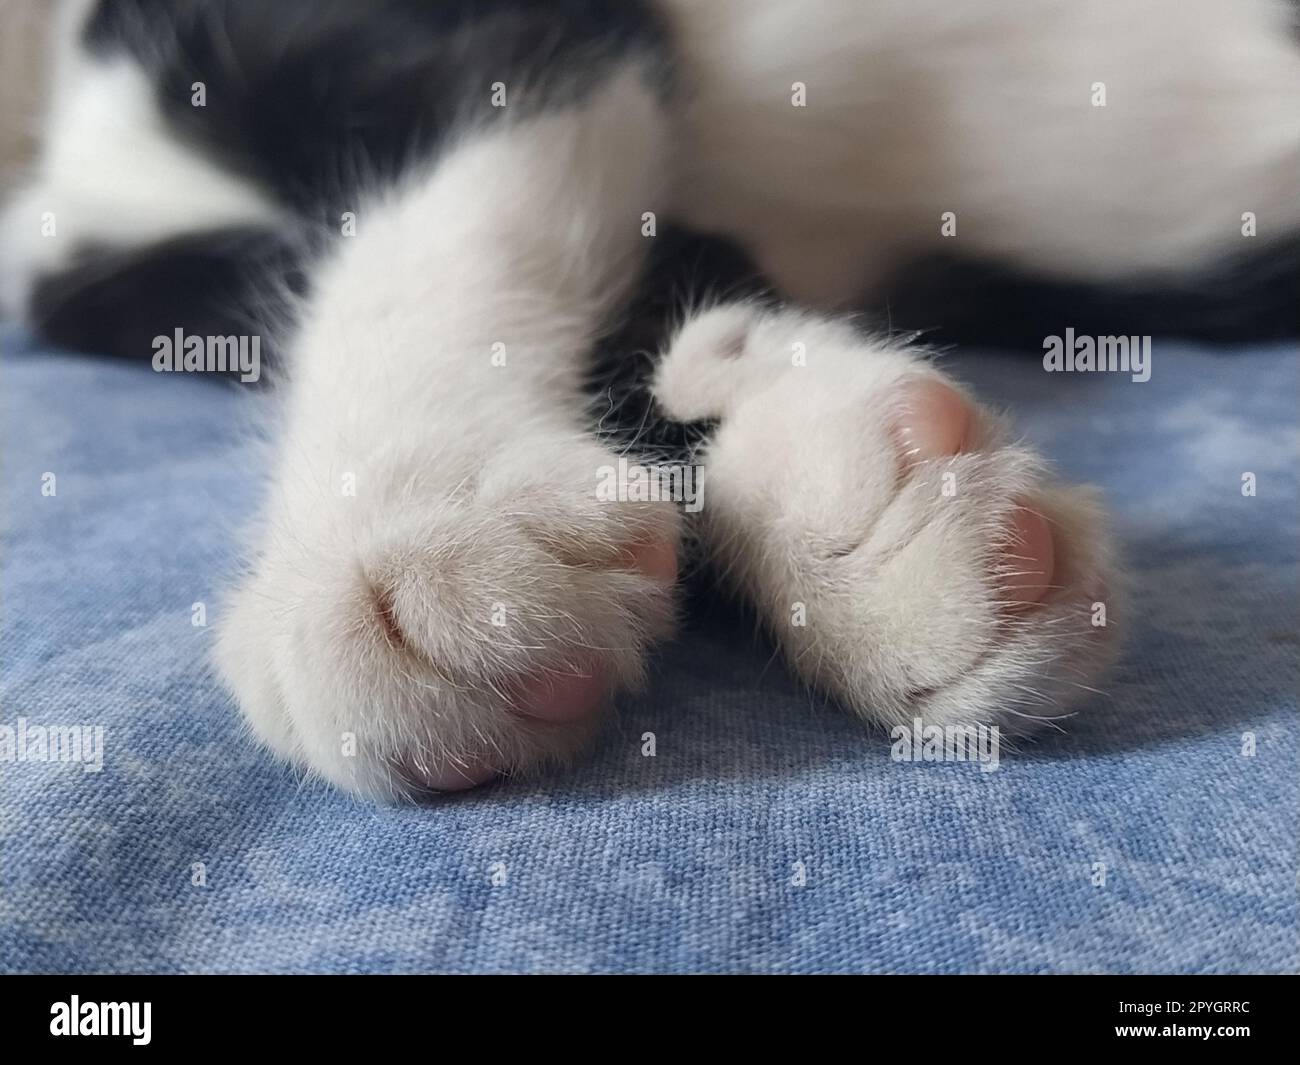 Die Pfoten einer schwarz-weißen Katze aus der Nahaufnahme. Das Kätzchen schläft auf einer blauen Decke mit ausgestreckten Pfoten. Foto an den Rändern verschwommen. Weiche flauschige Finger und pinkfarbene Katzenpolster. Stockfoto